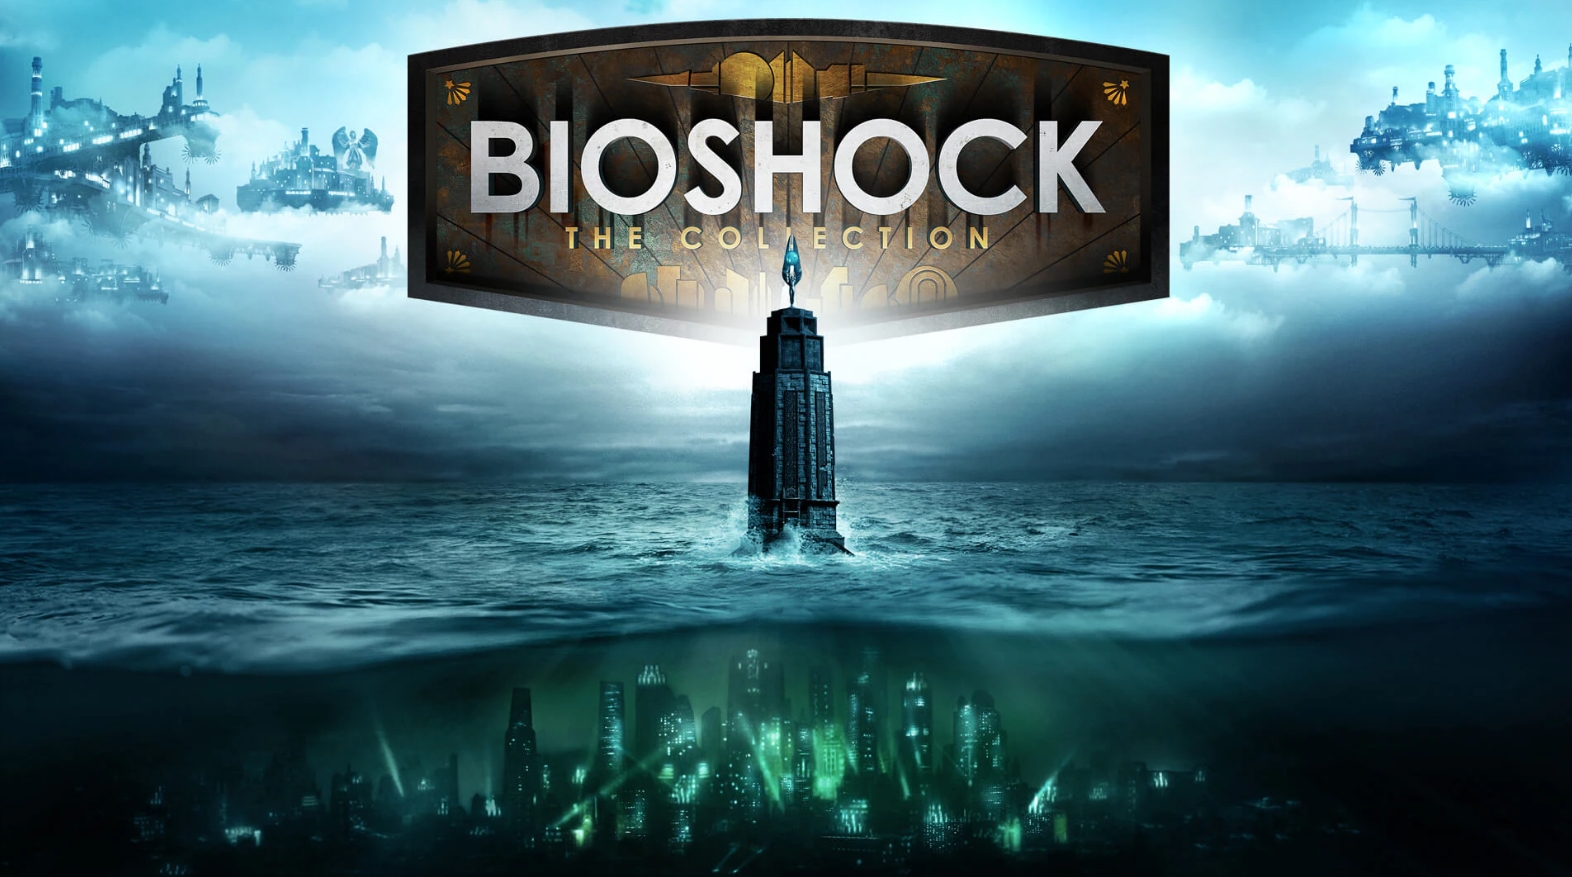 Game Bioshock The Collection Gratis di Epic Games, Langsung Klaim!